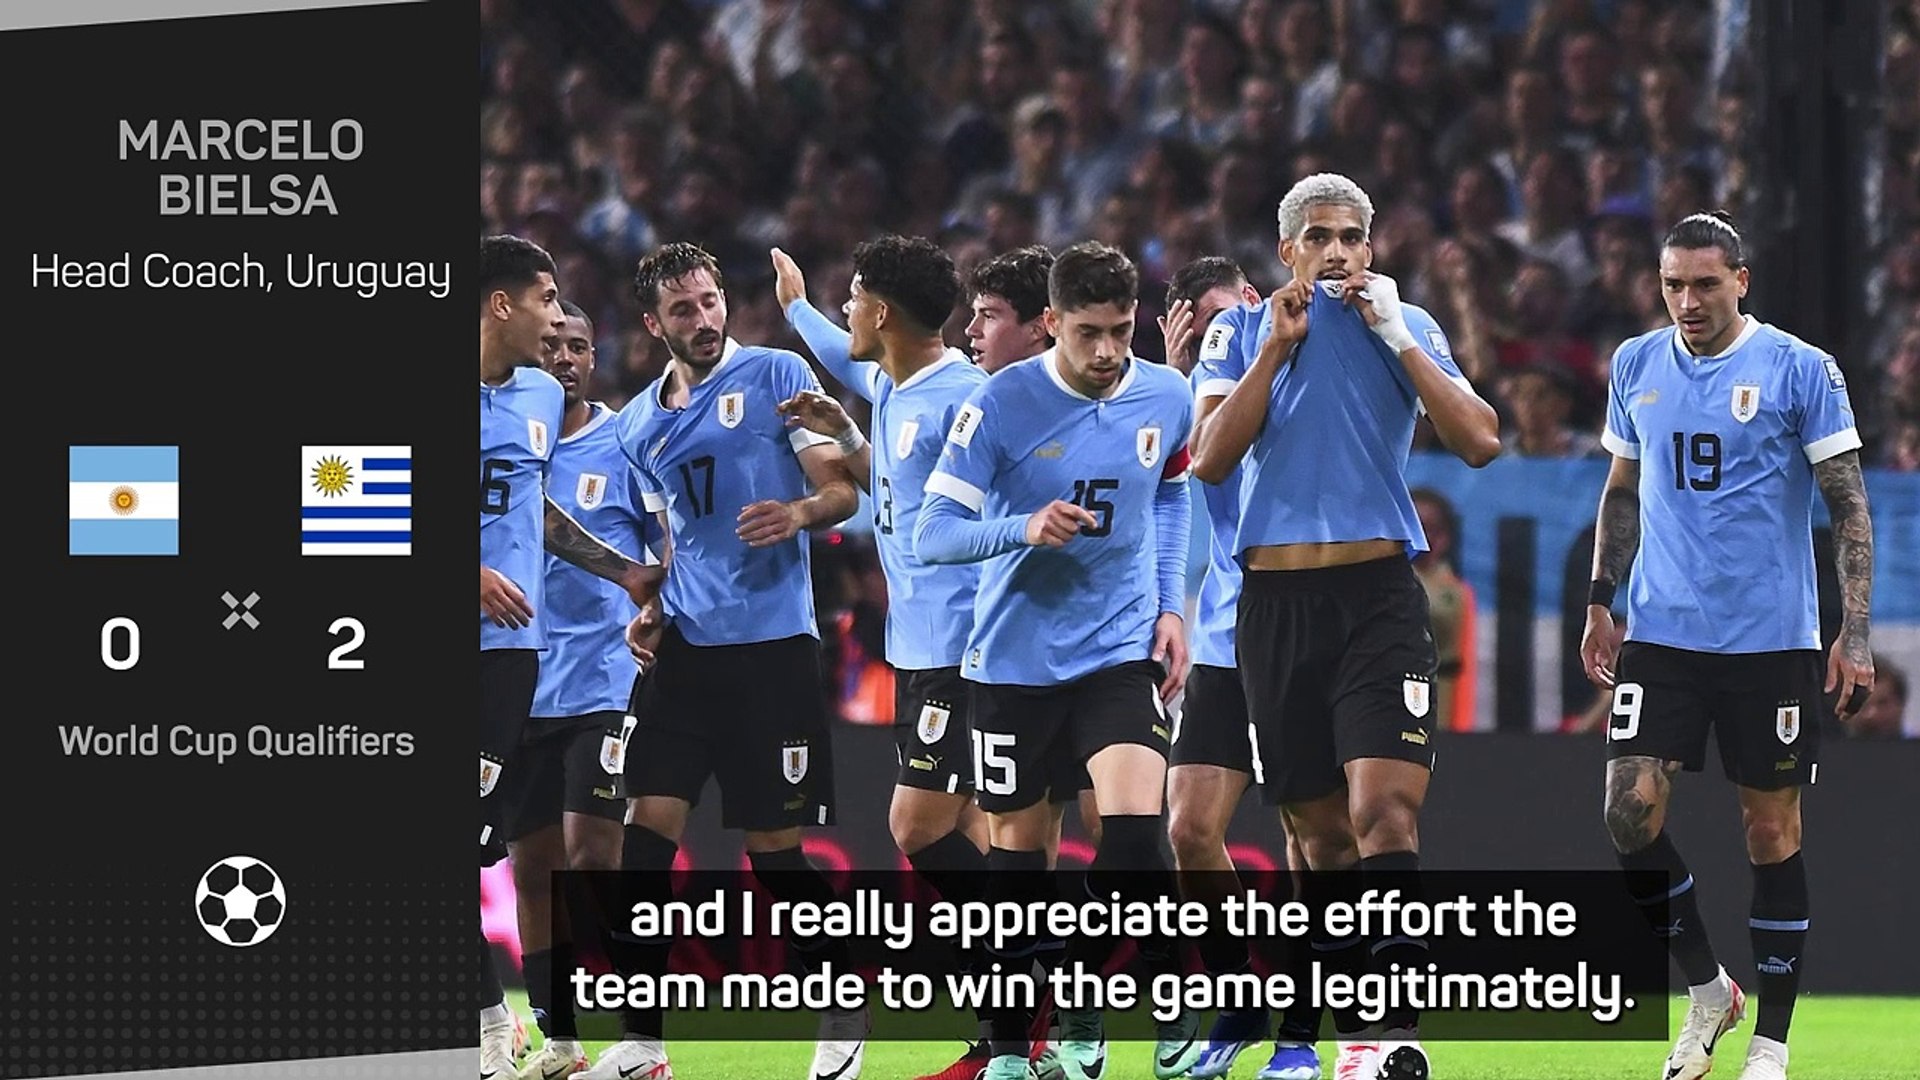 Highlights y goles: Argentina vs Uruguay 0-2